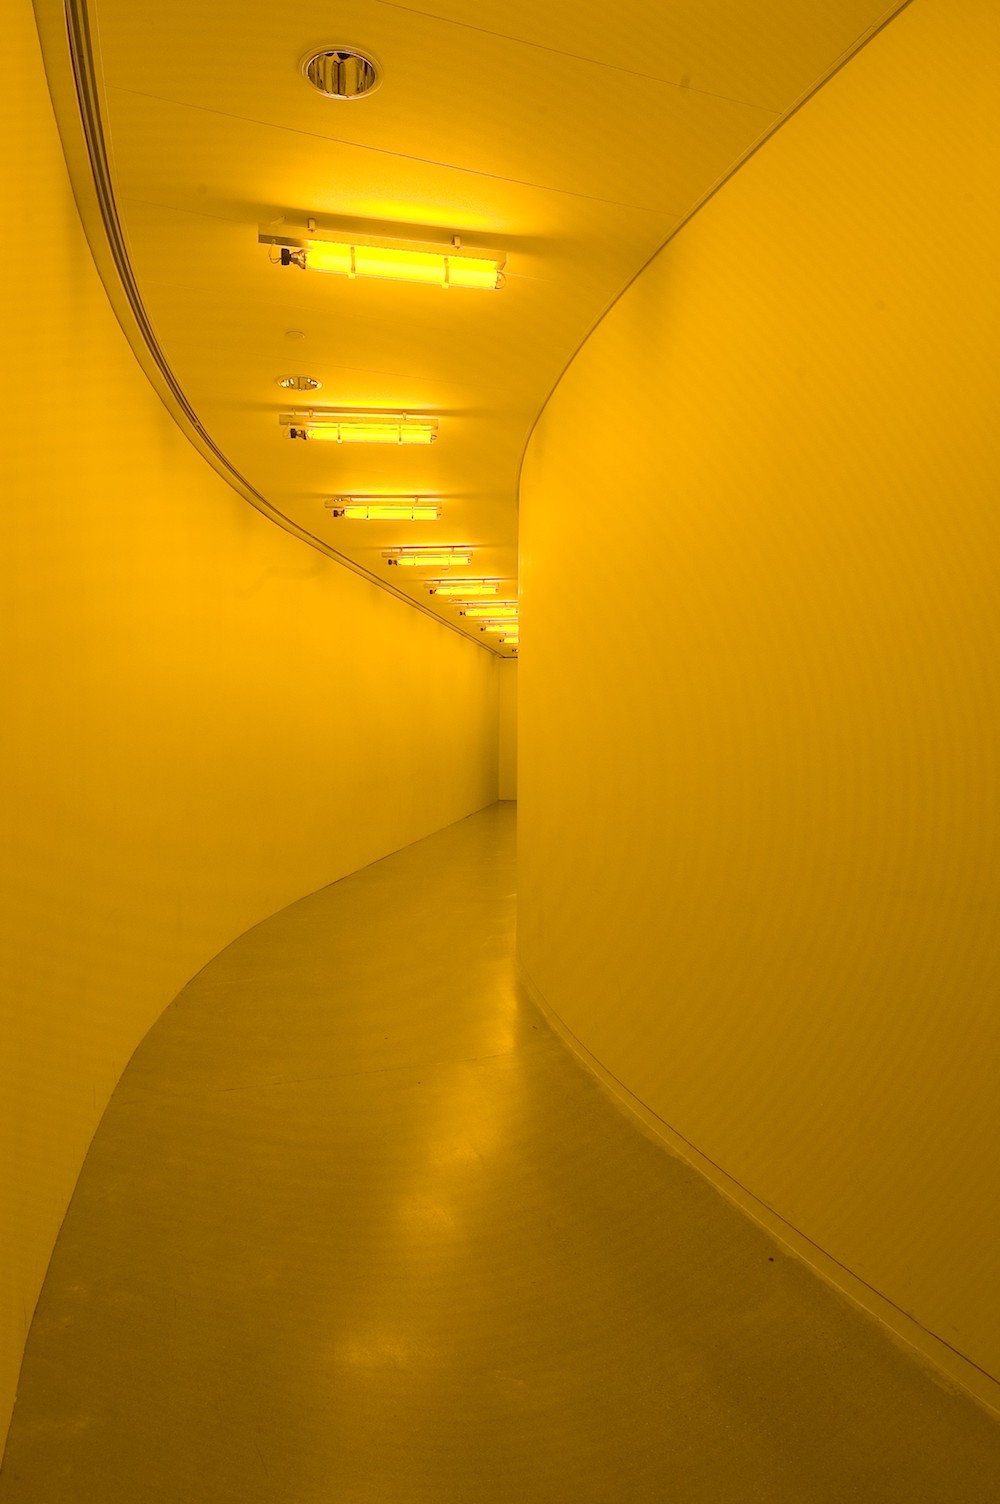 Image: Olafur Eliasson, Yellow Corridor, 1997. Photo: Poul Pedersen